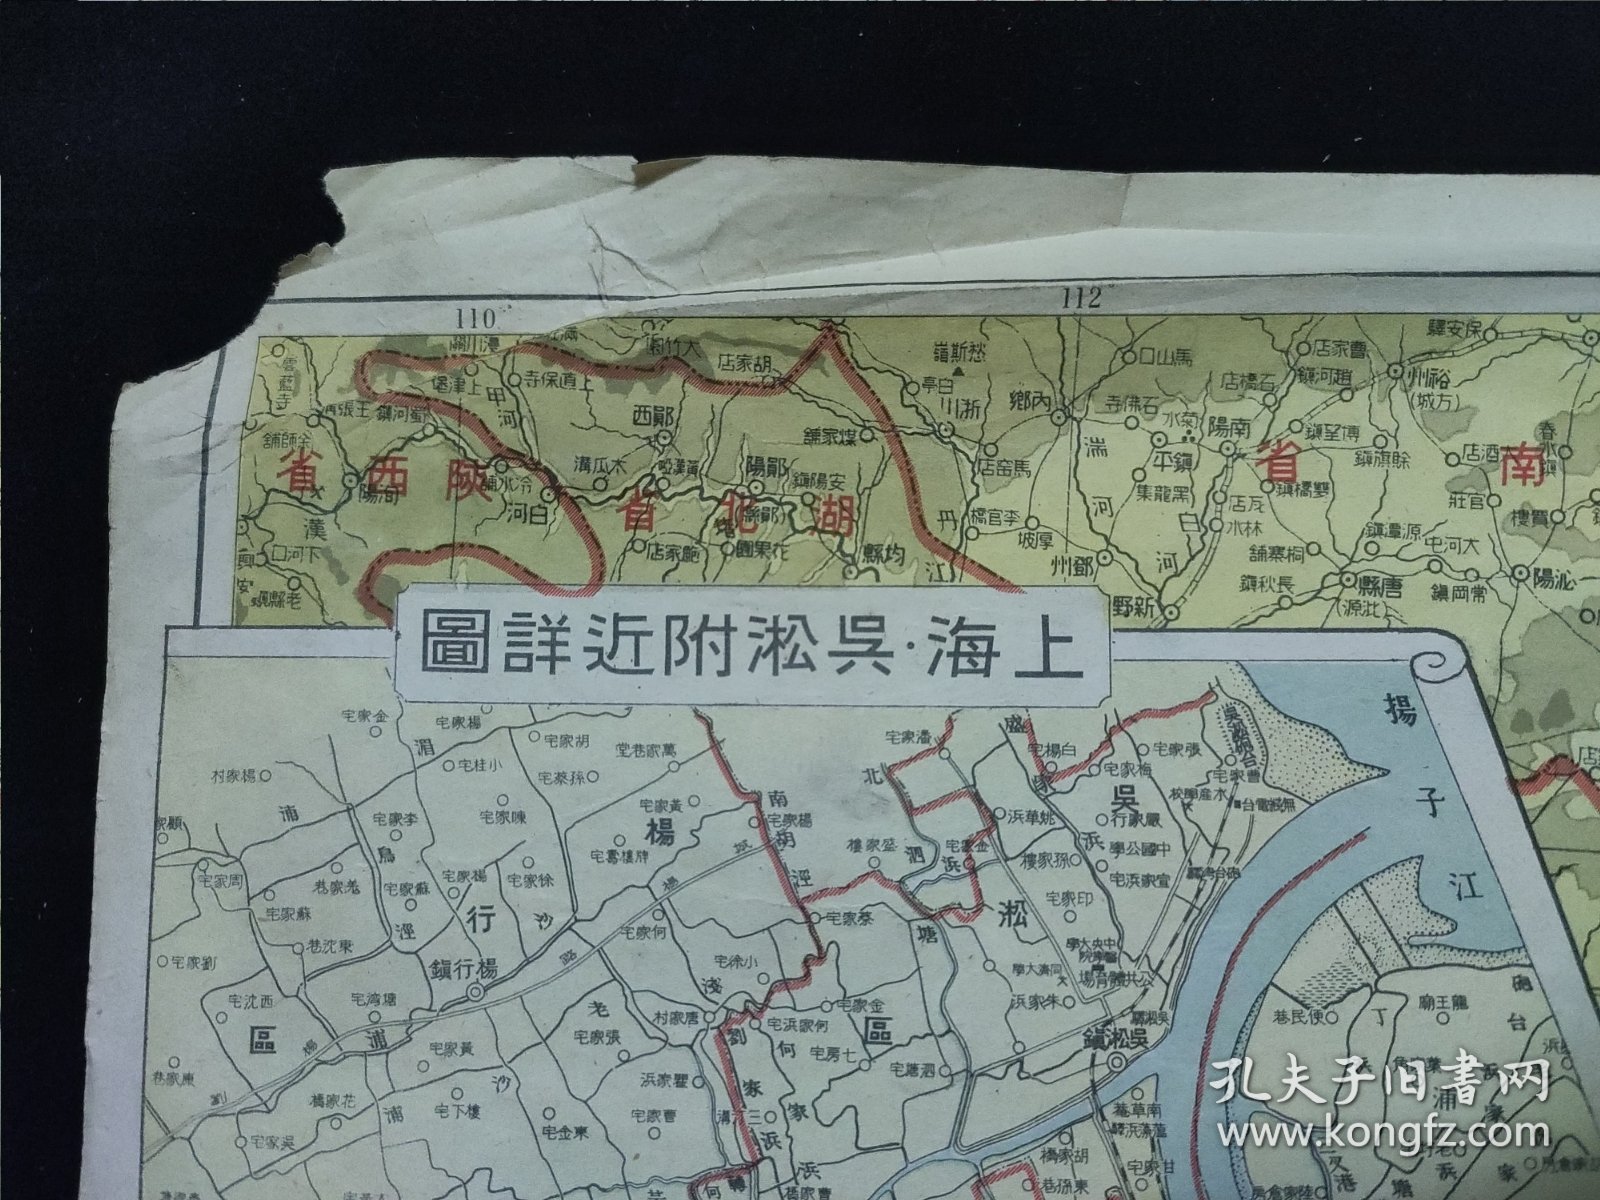 民国老地图 《华中战局详解地图》 南京市街图 上海吴淞附近详图